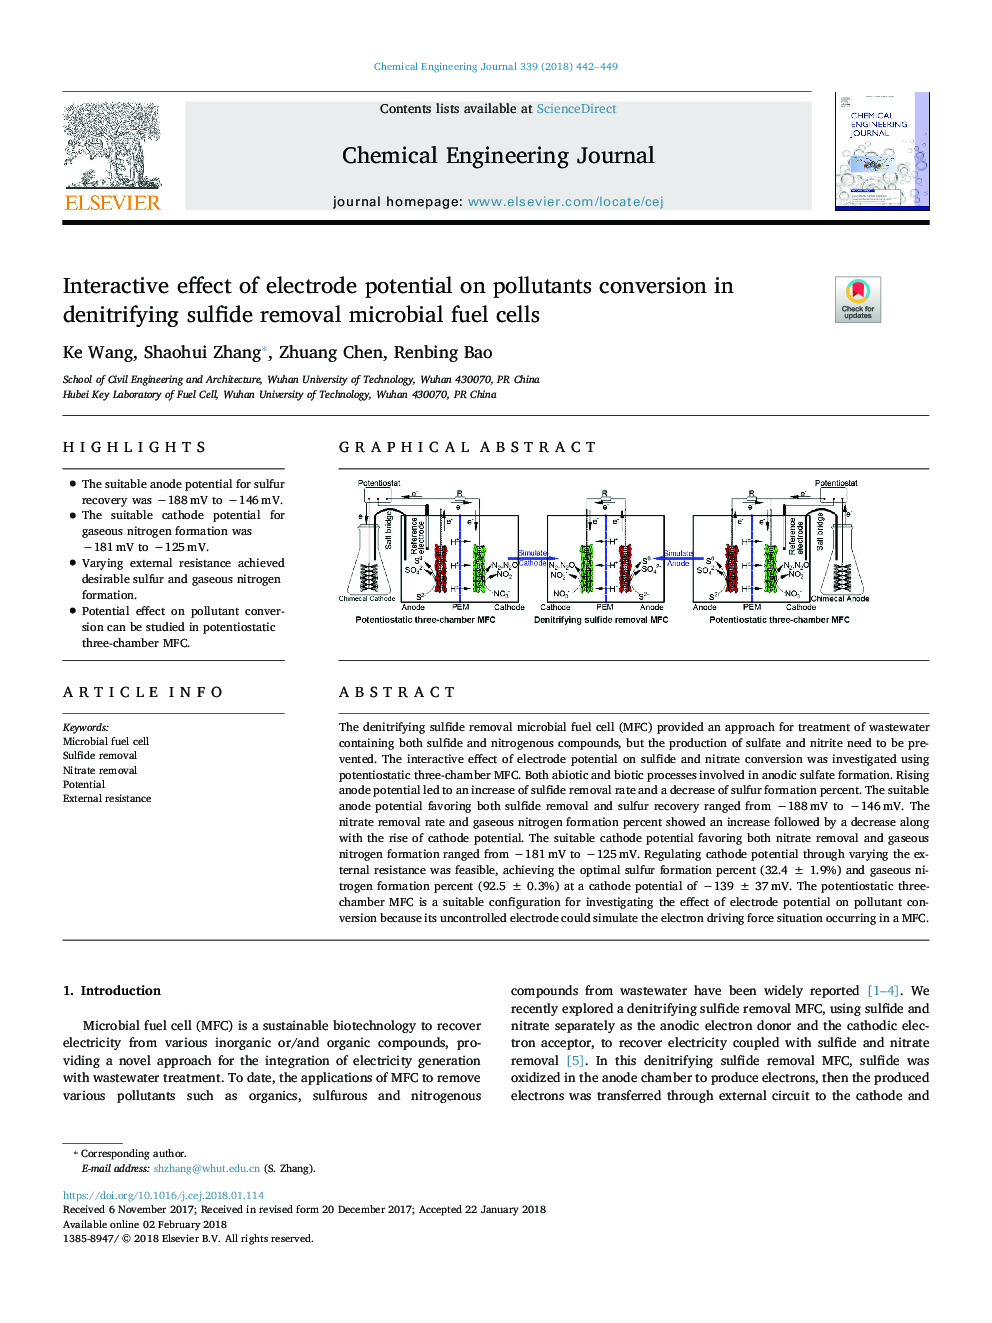 اثر تعاملی پتانسیل الکترود در تبدیل آلاینده ها در سلول های سوختی میکروبی حذف سولفیدها 